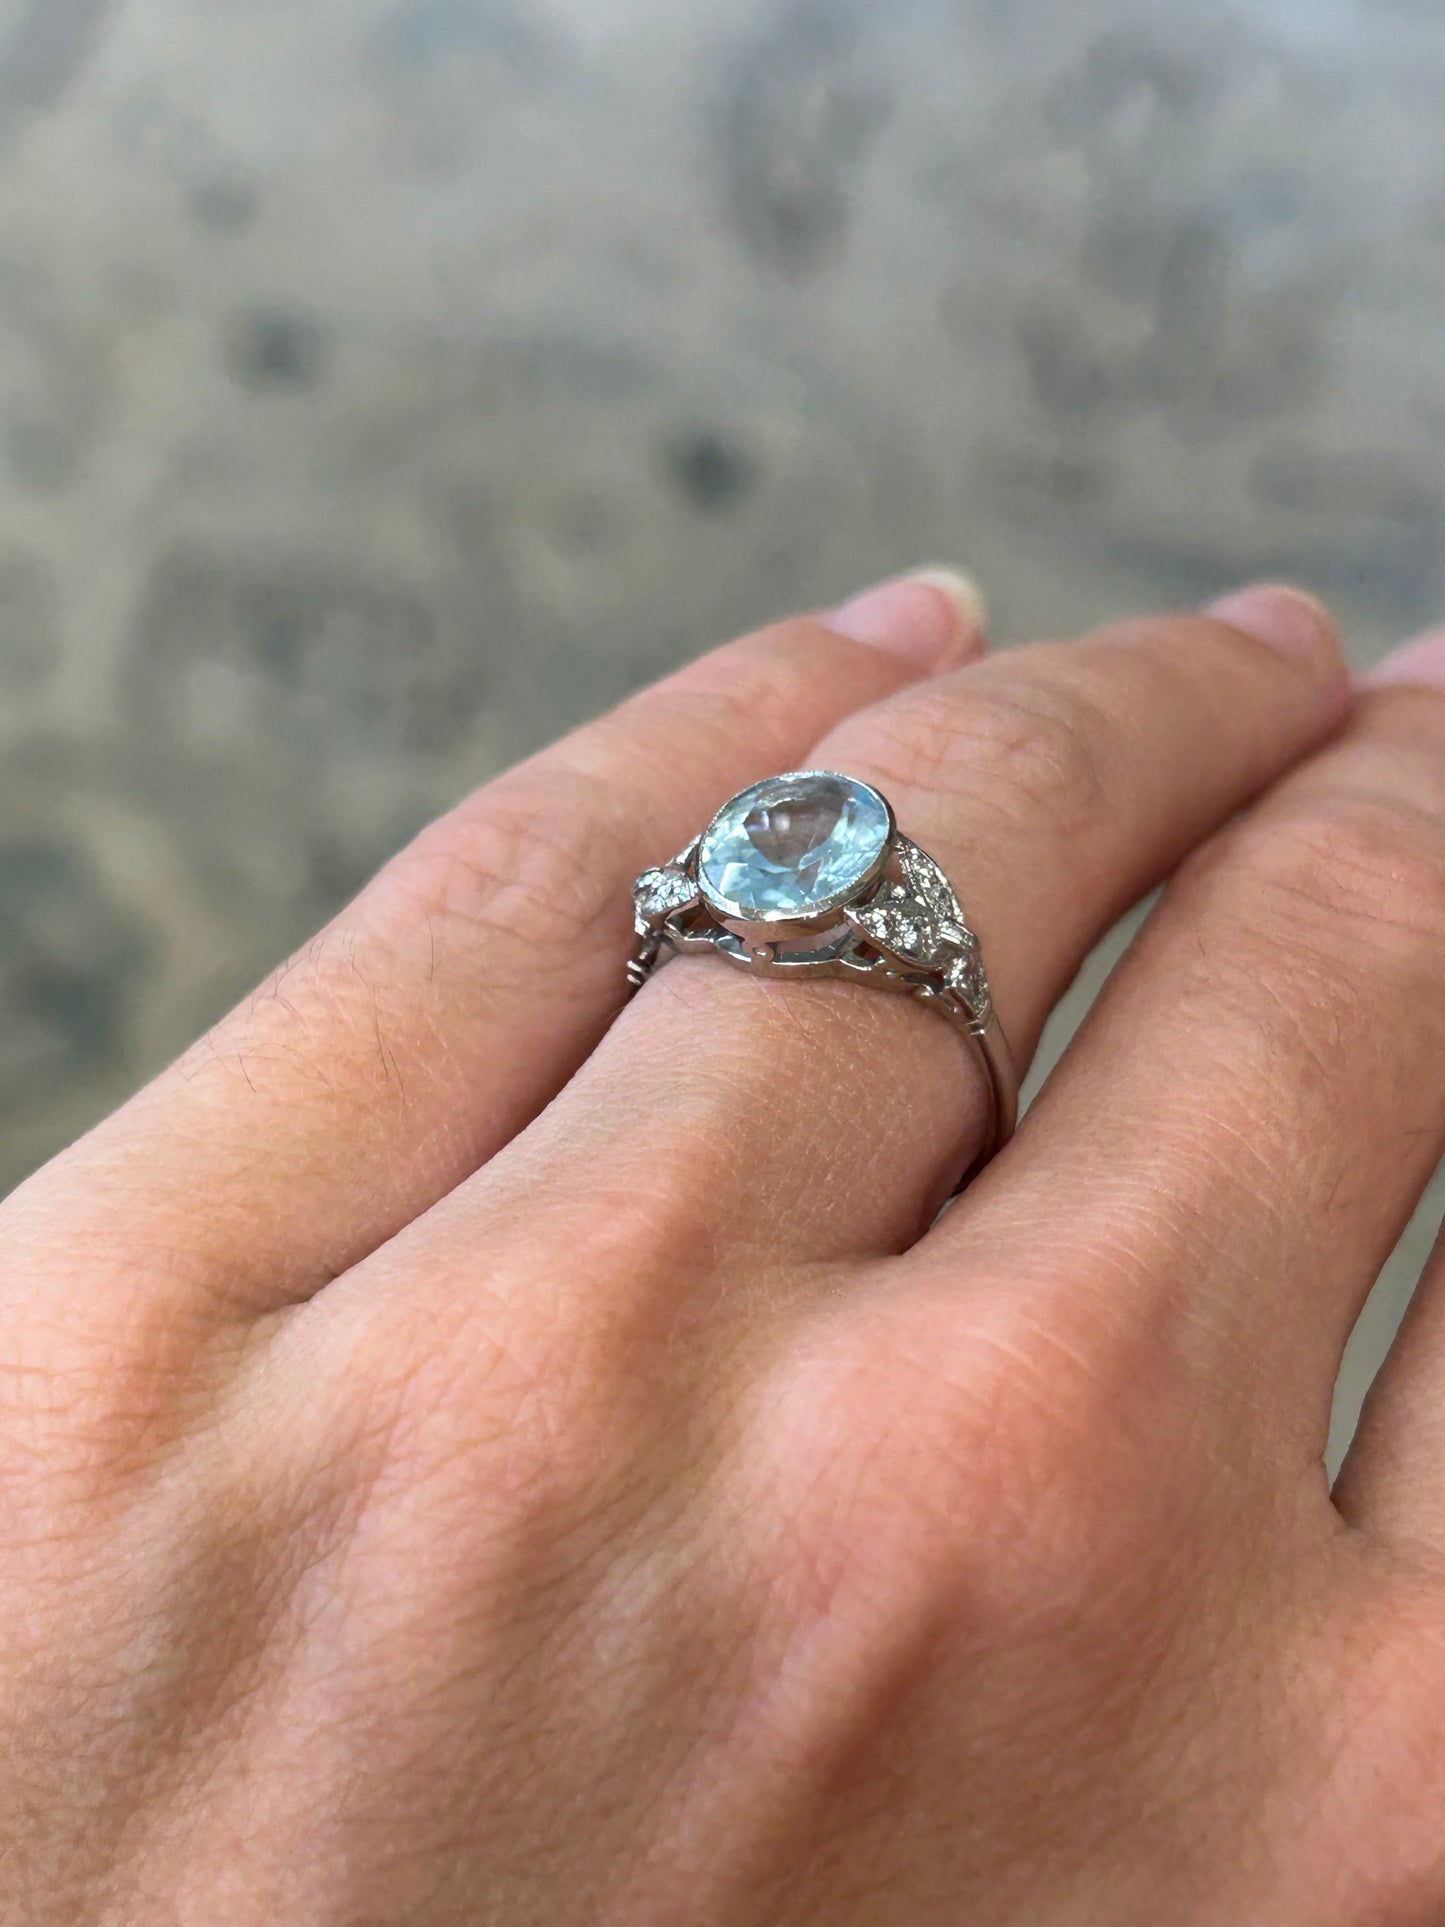 Platinum aquamarine and diamond ring